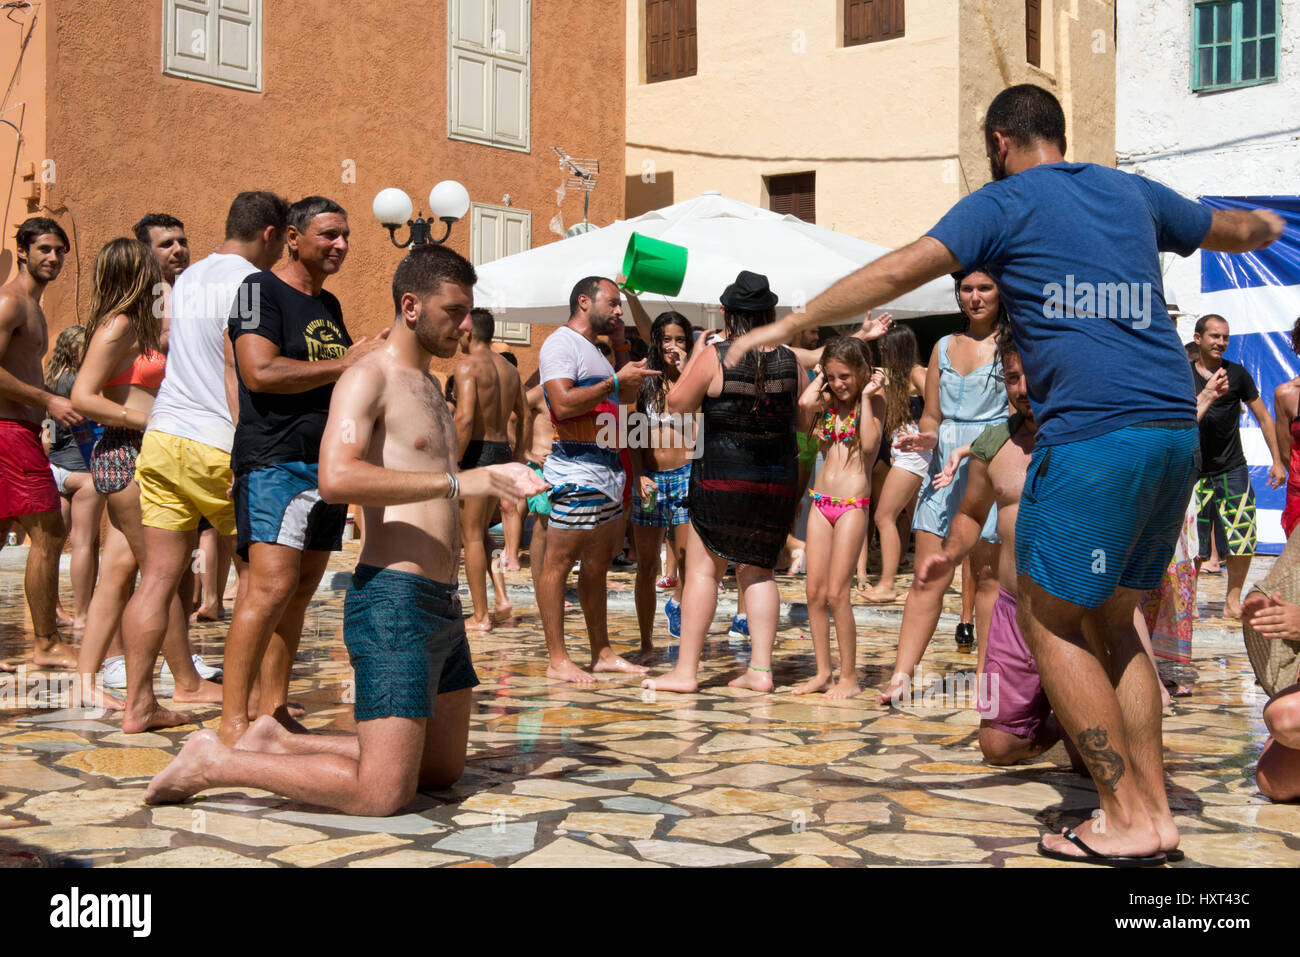 En Badekleidung tanzende Menschen auf Dorfplatz, dahinter farbige Häuser und griechische Fahne, Insel, Kastellorizo Dodekanes, Griechenland Foto de stock